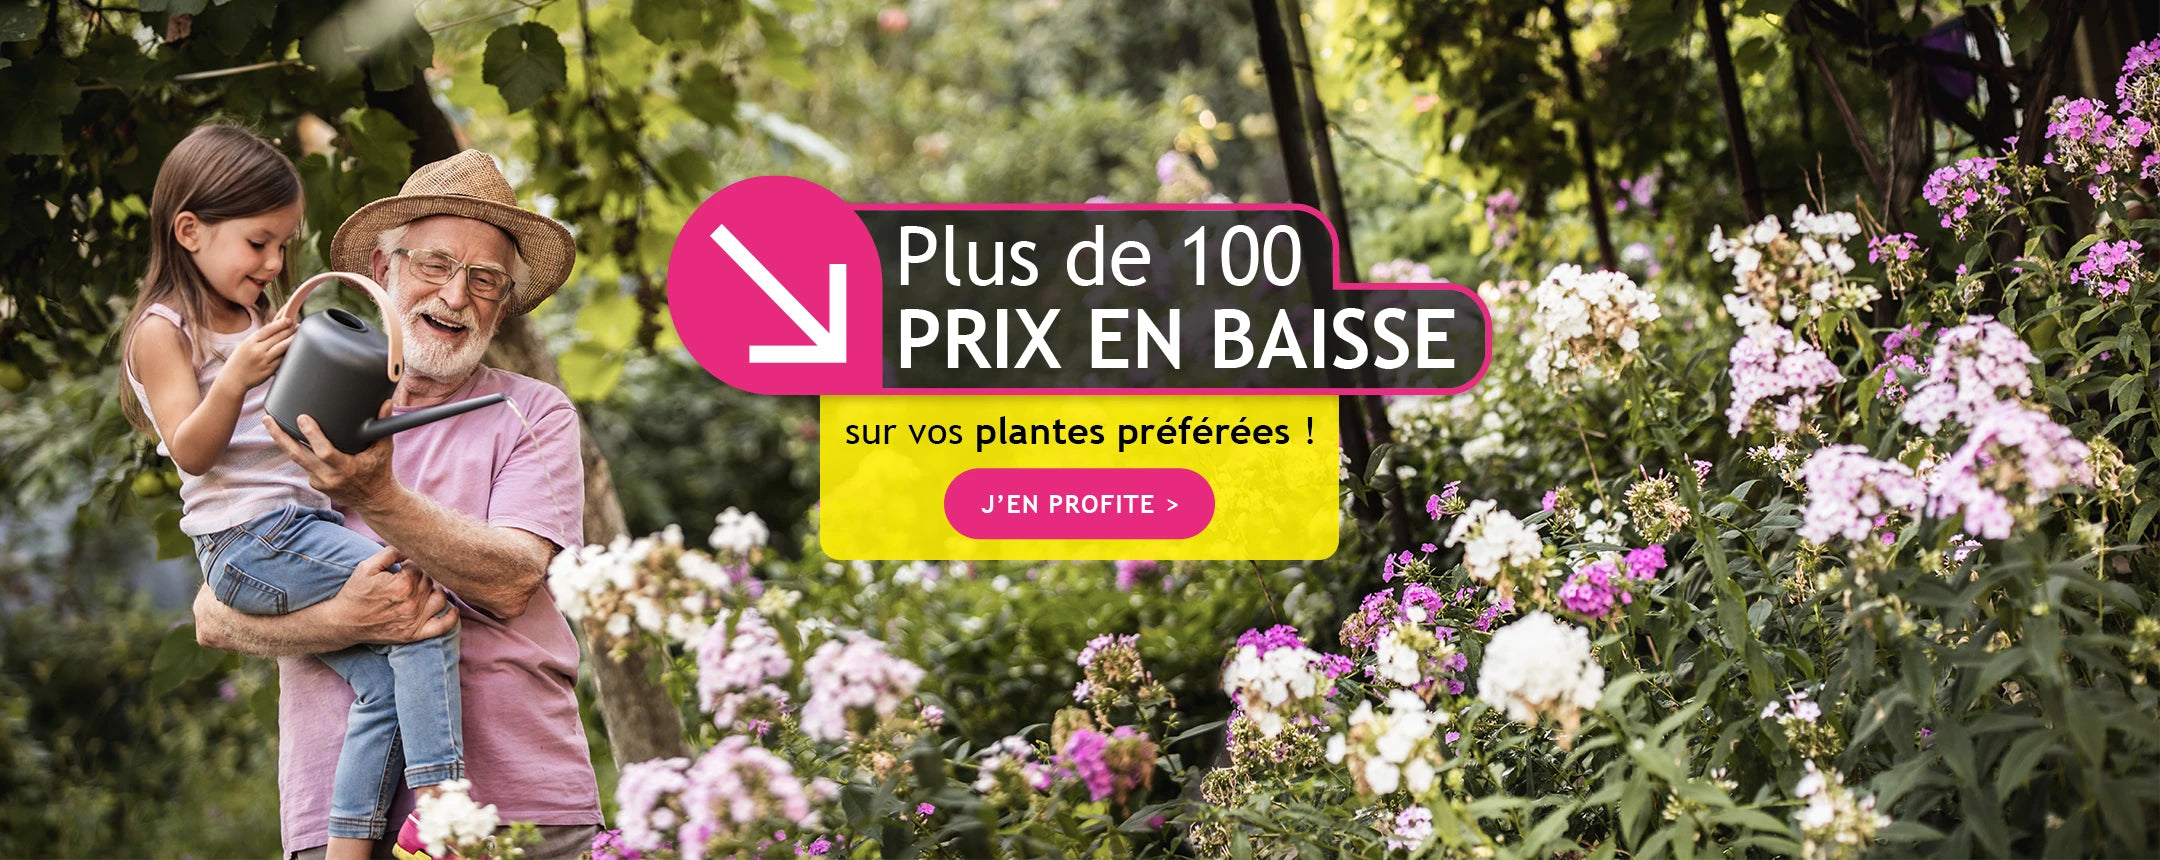 Plus de 100 prix en baisse sur vos plantes préférées !